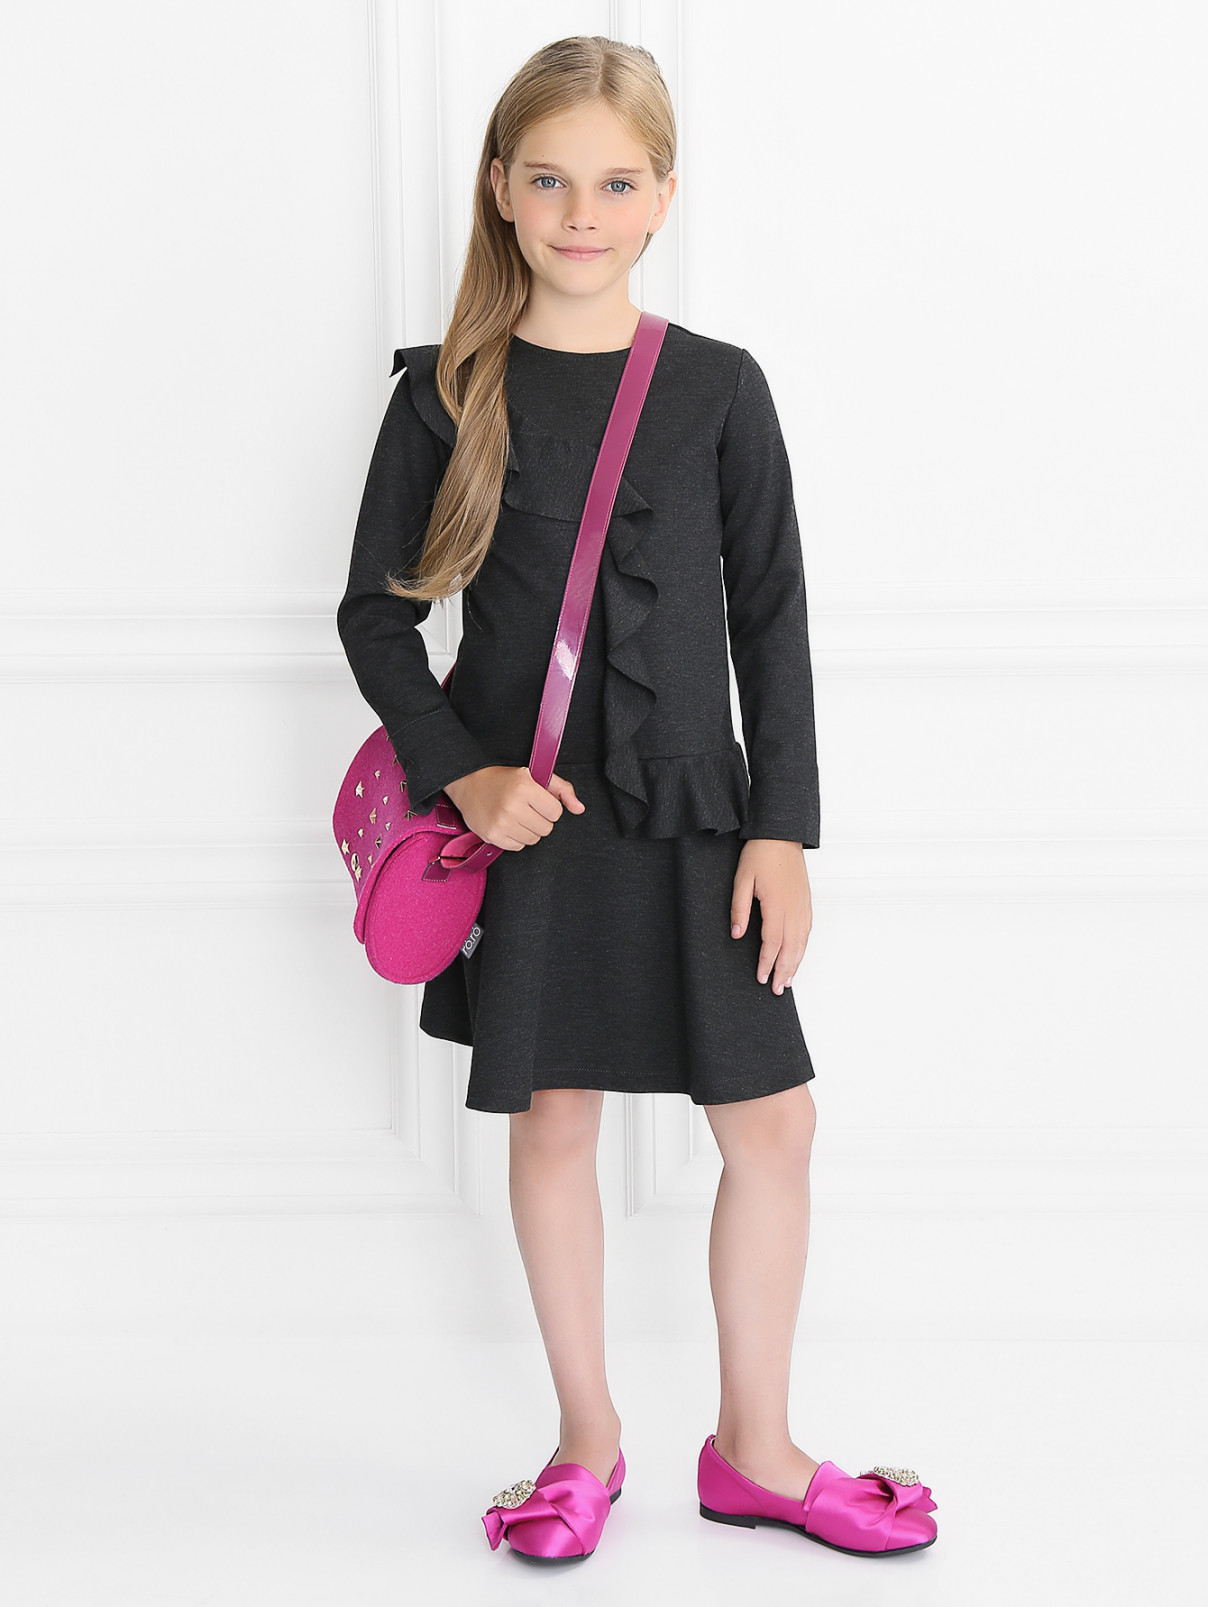 Трикотажное платье с оборками Aletta Couture  –  Модель Общий вид  – Цвет:  Серый